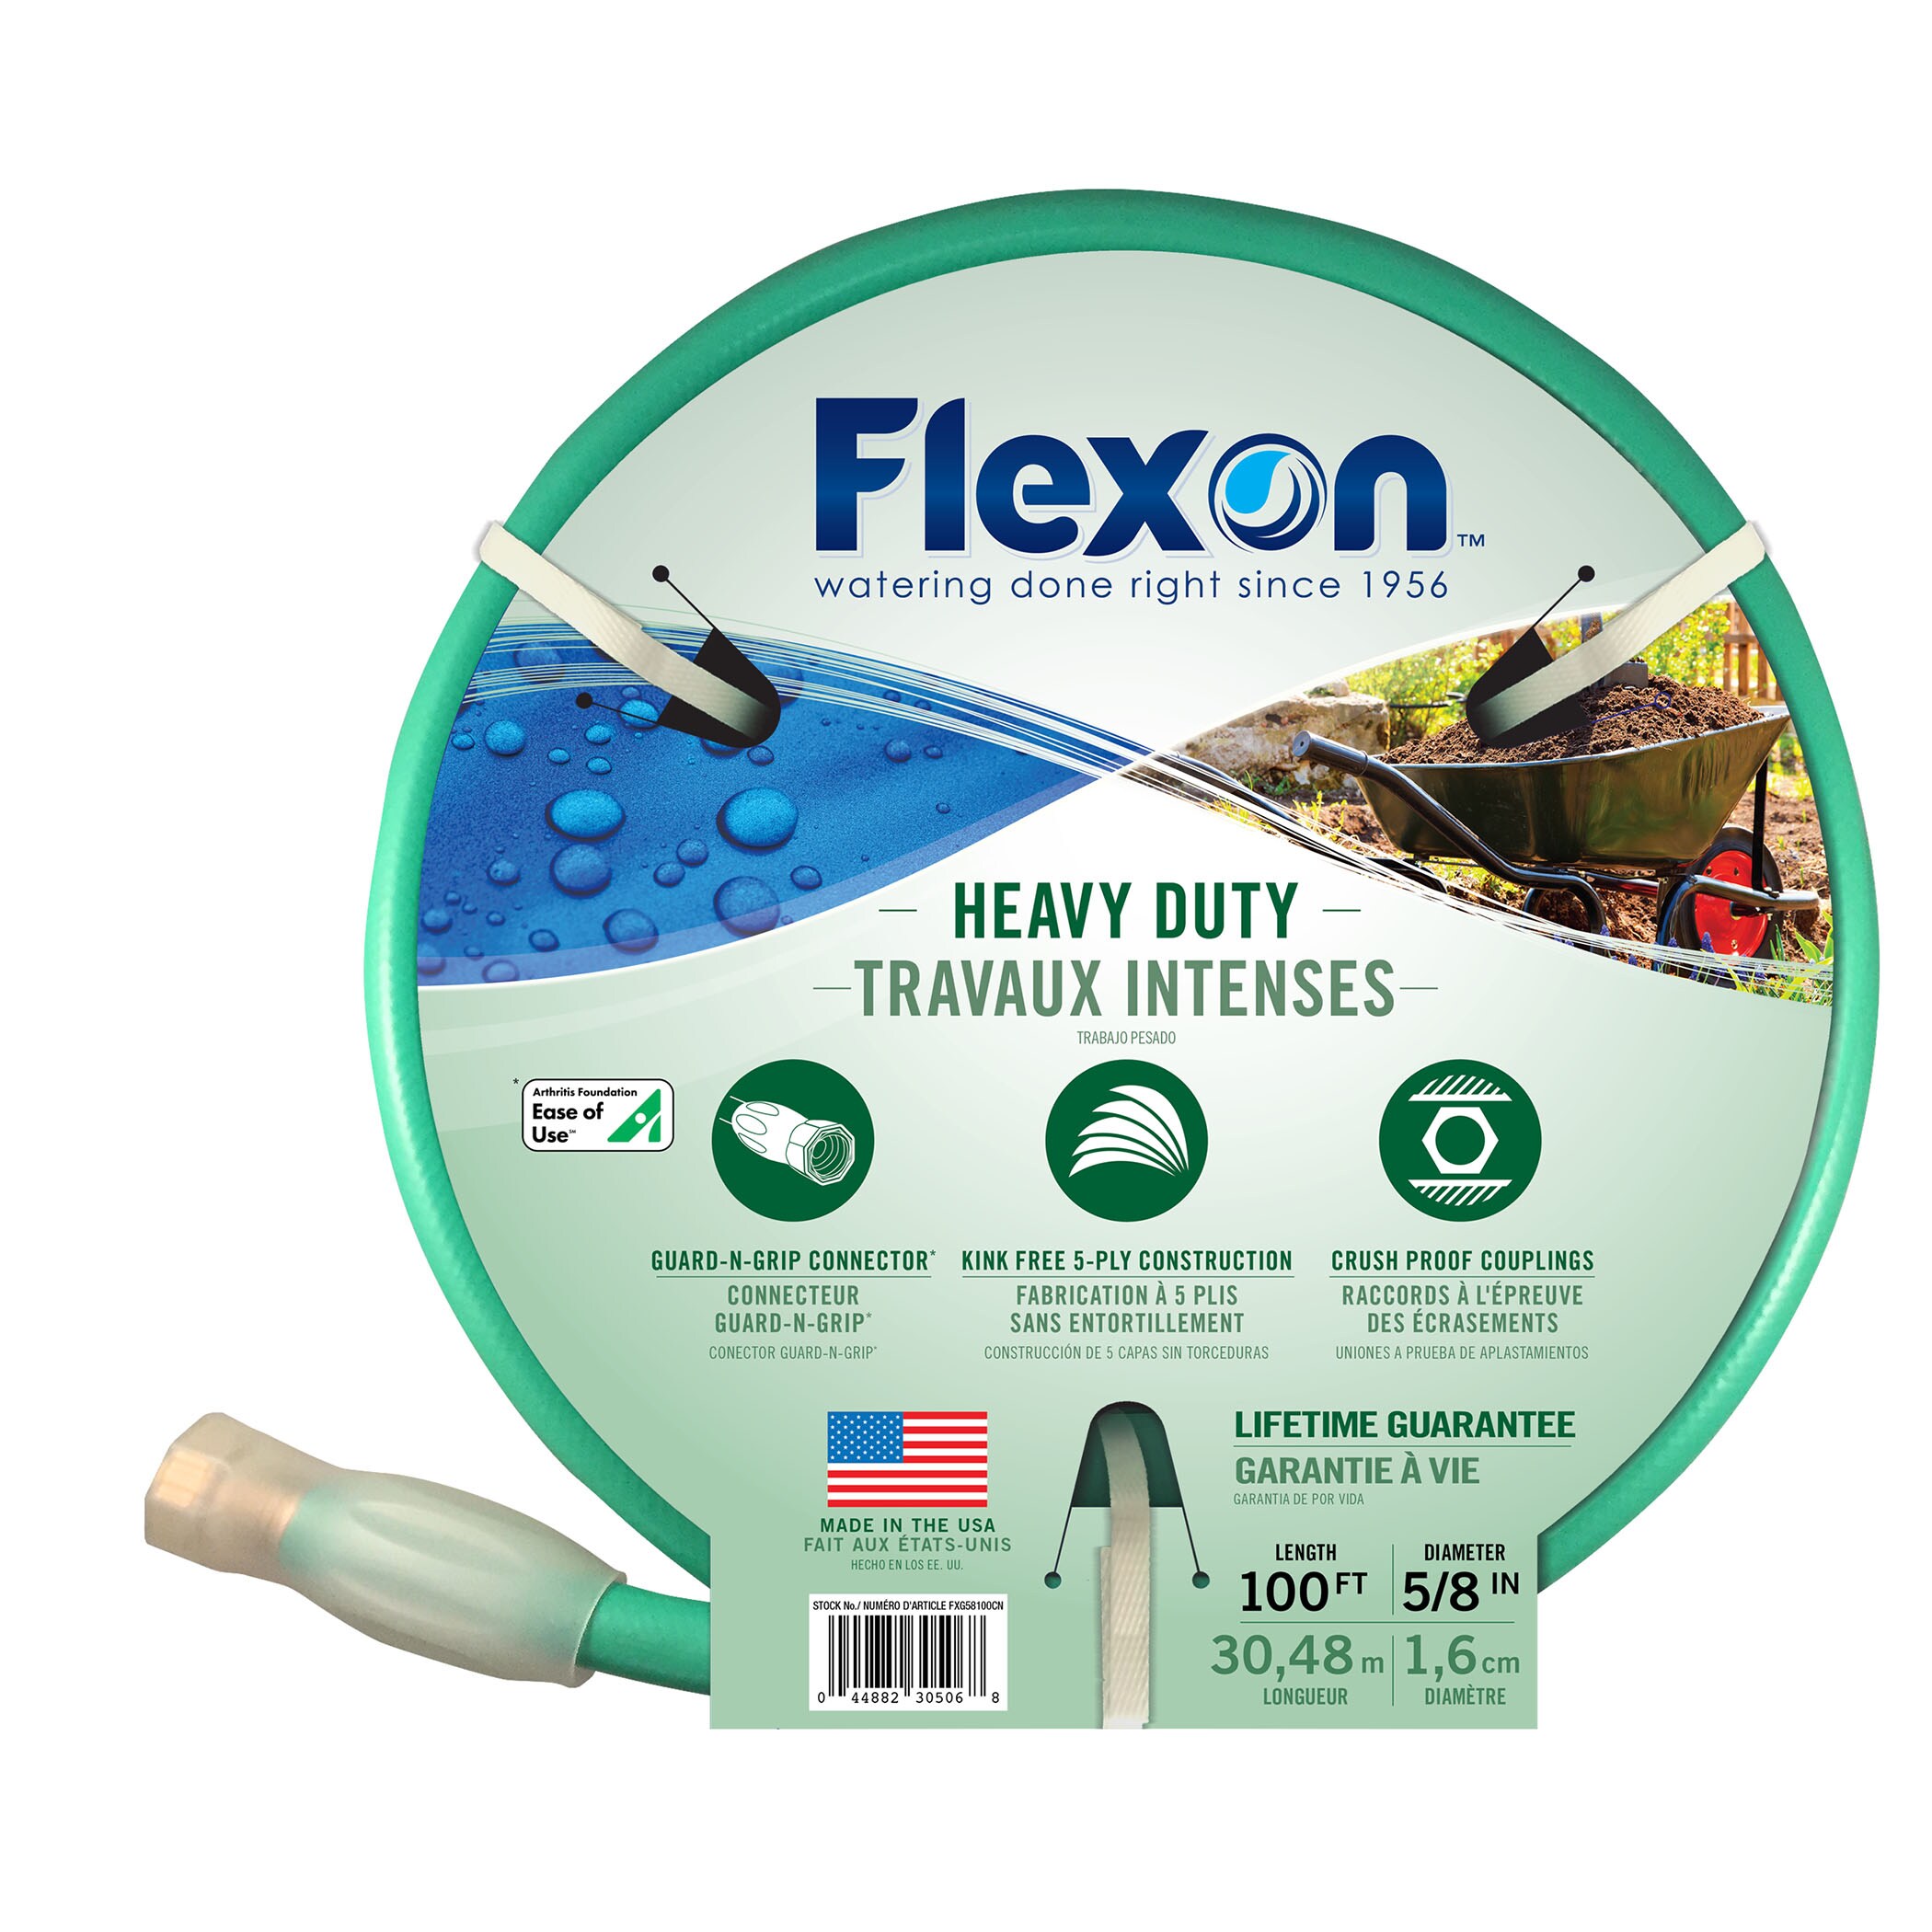 Flexon light duty Three Tube Sprinkler Hose 25" 50" 100" ft,